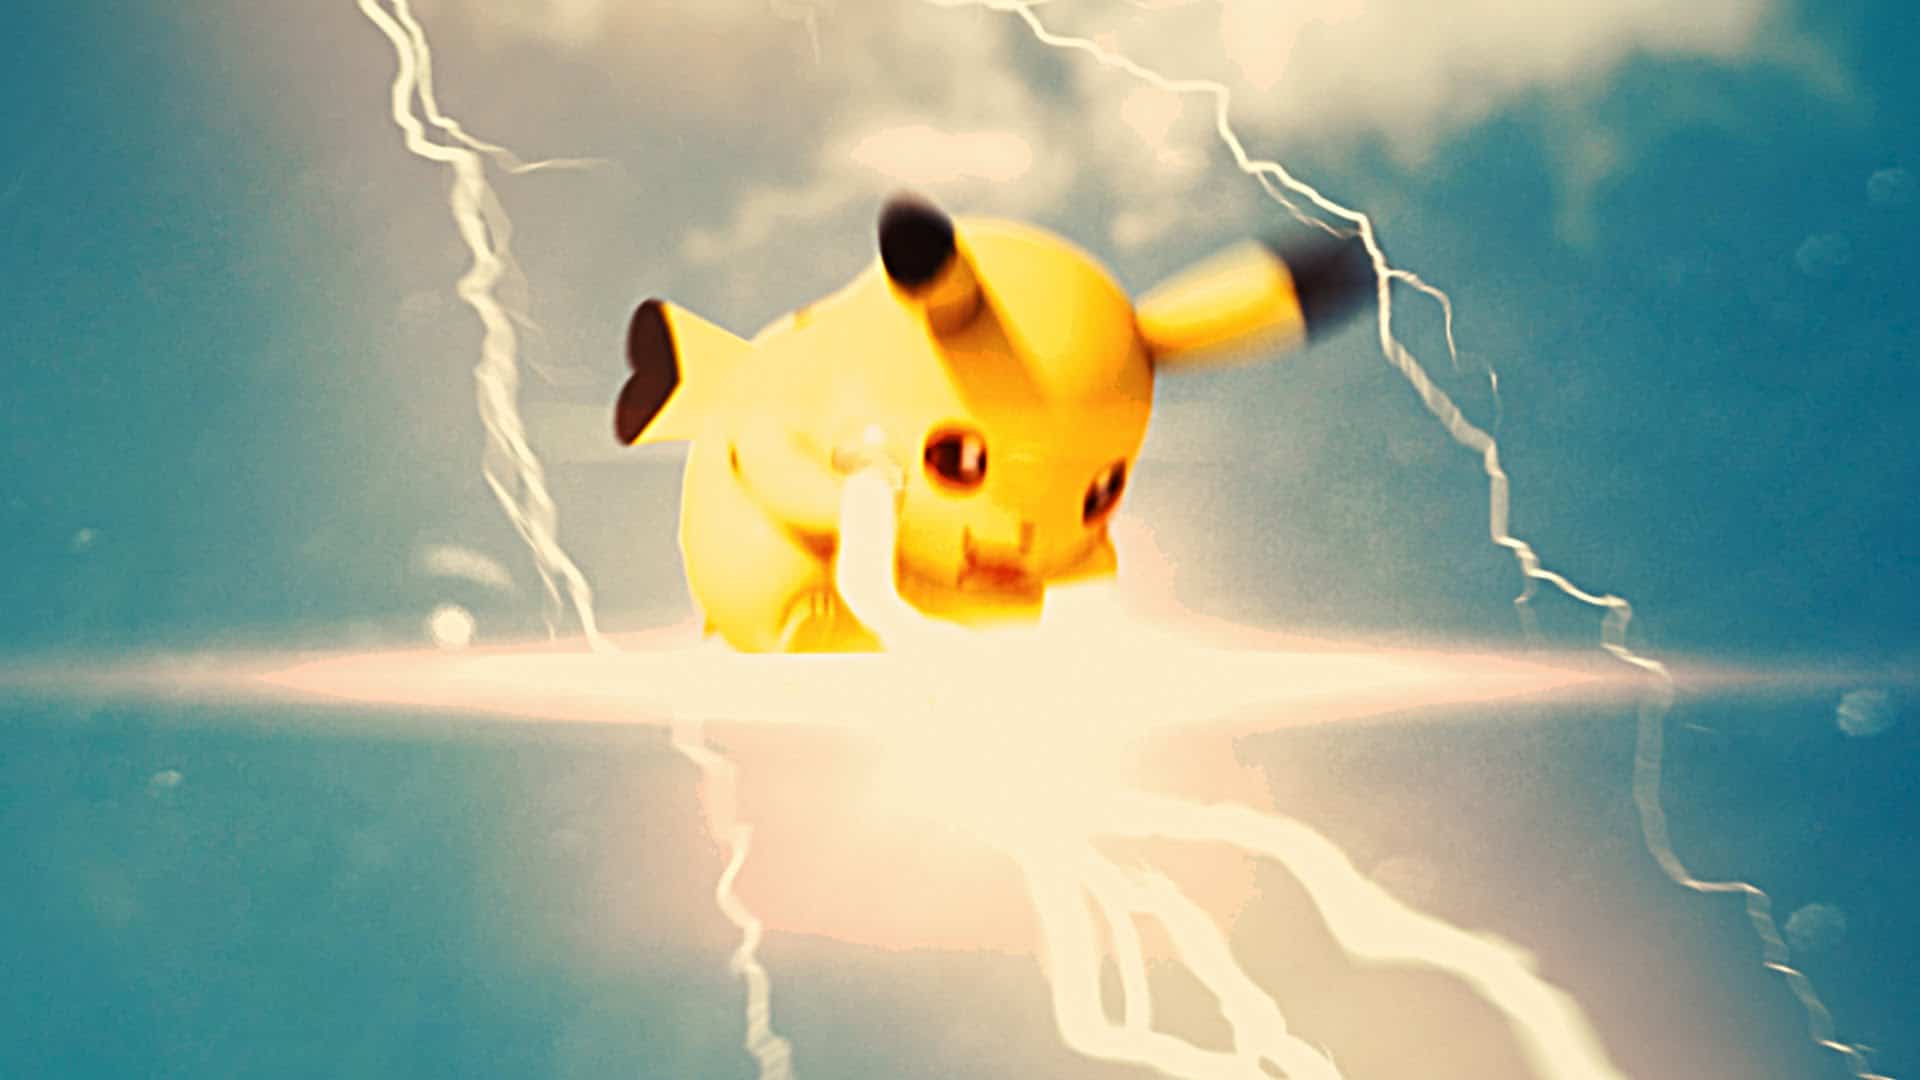 Quando Pokémon GO fica muito real